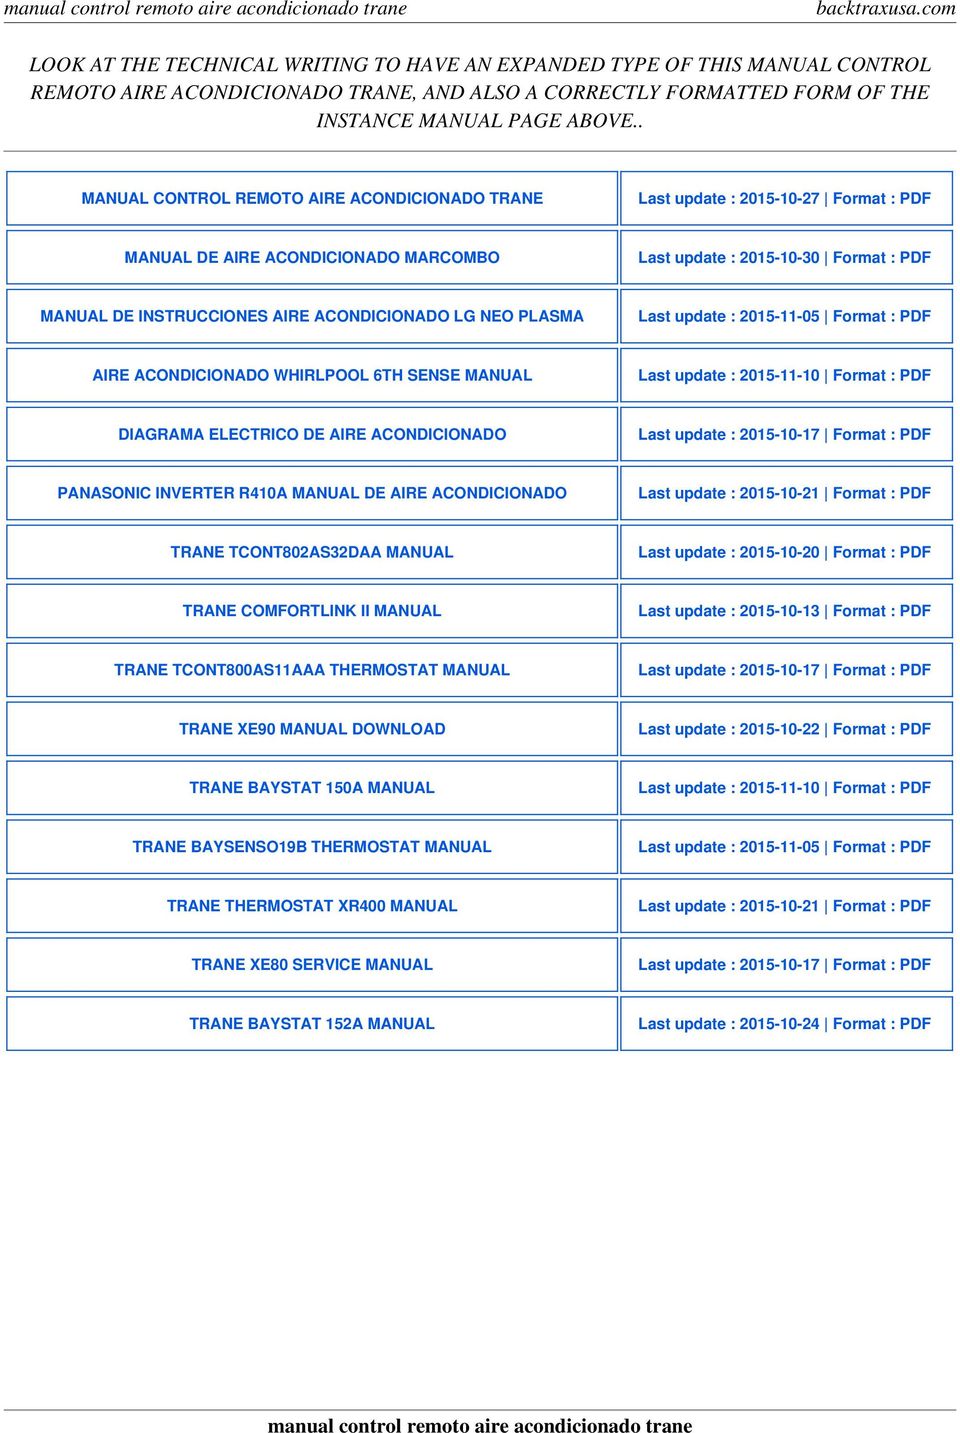 ACONDICIONADO LG NEO PLASMA Last update : 2015-11-05 Format : PDF AIRE ACONDICIONADO WHIRLPOOL 6TH SENSE MANUAL Last update : 2015-11-10 Format : PDF DIAGRAMA ELECTRICO DE AIRE ACONDICIONADO Last